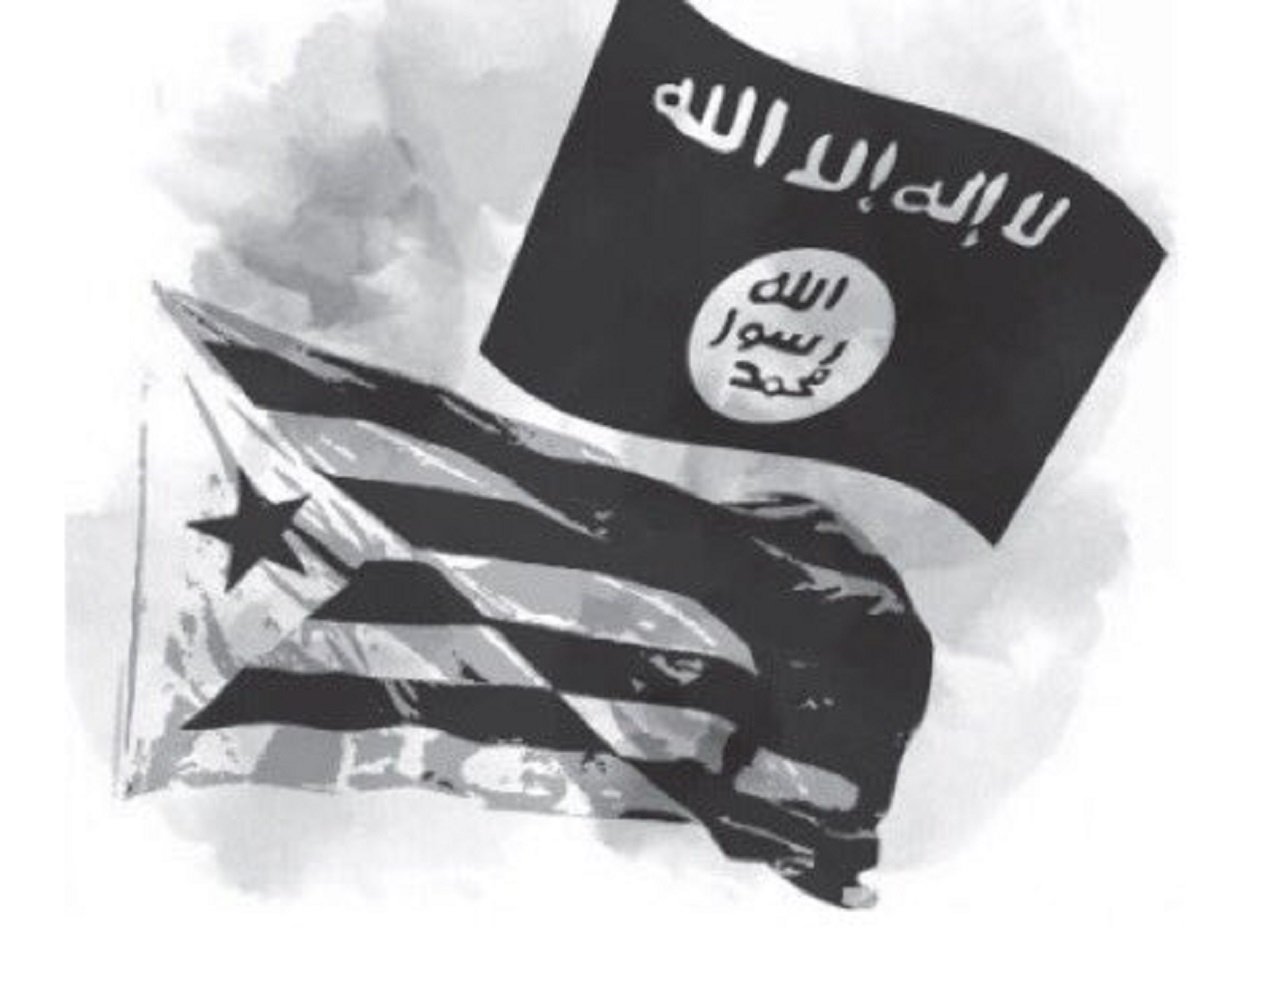 El PP barreja la bandera de Daesh amb l'estelada (i Rufián se'n fa ressò)